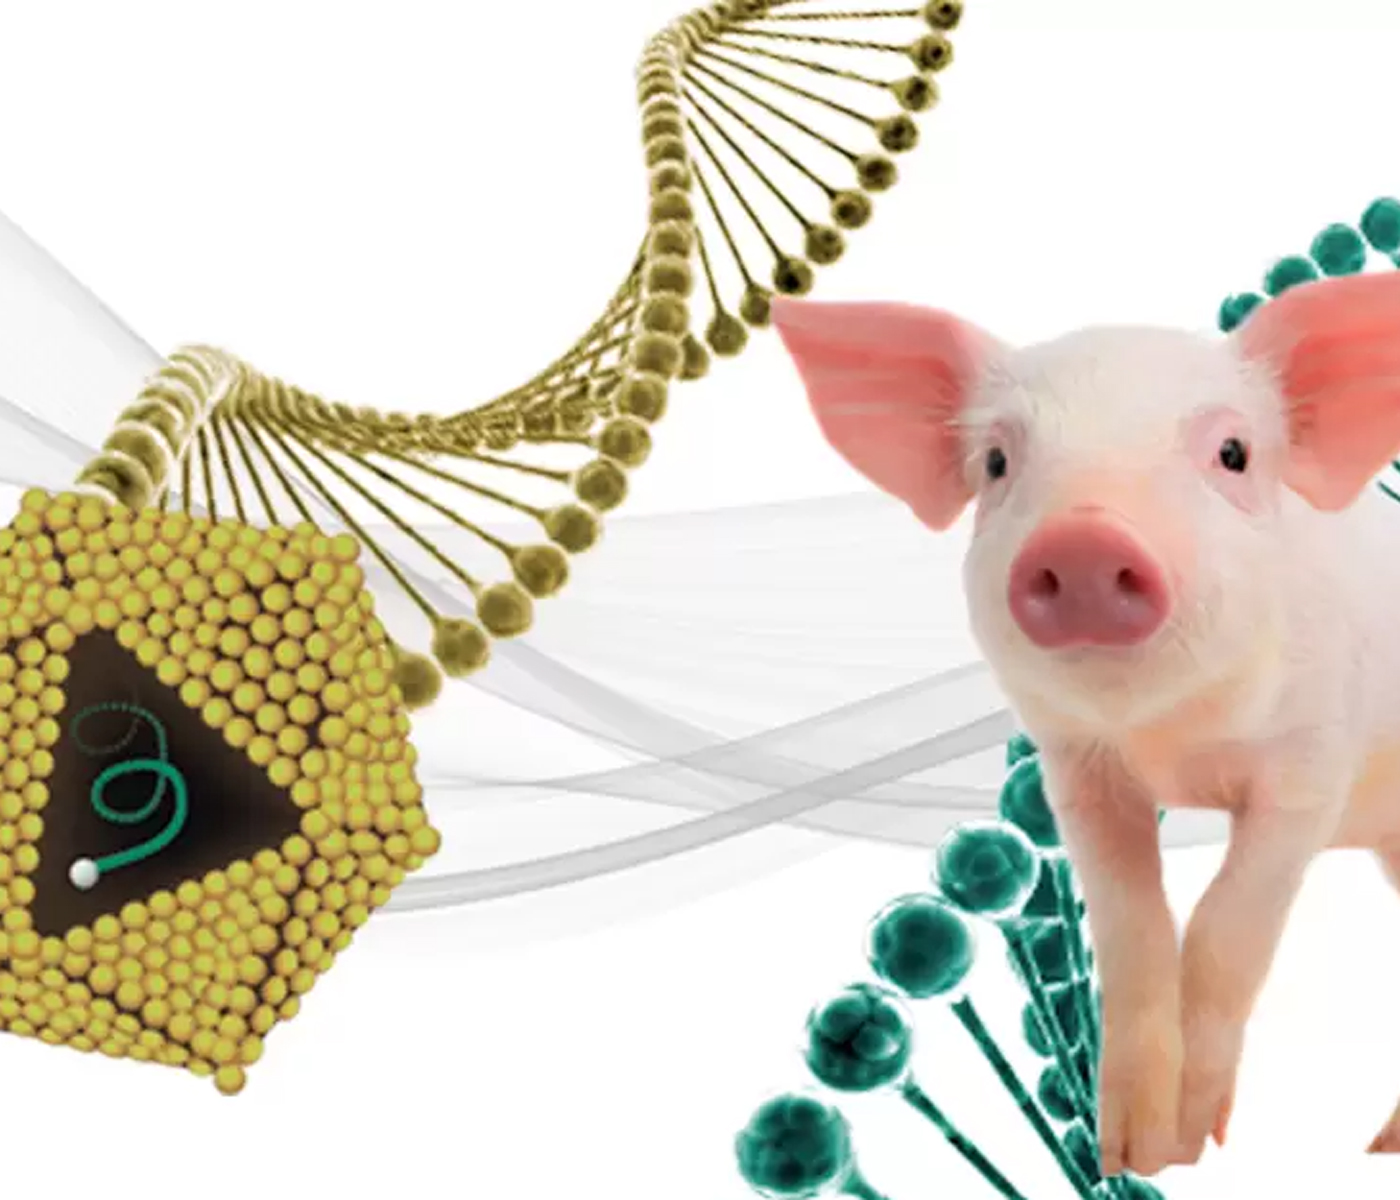 Recombinación de PCV2: Nuevo desafío para los programas de control de Circovirus Porcino